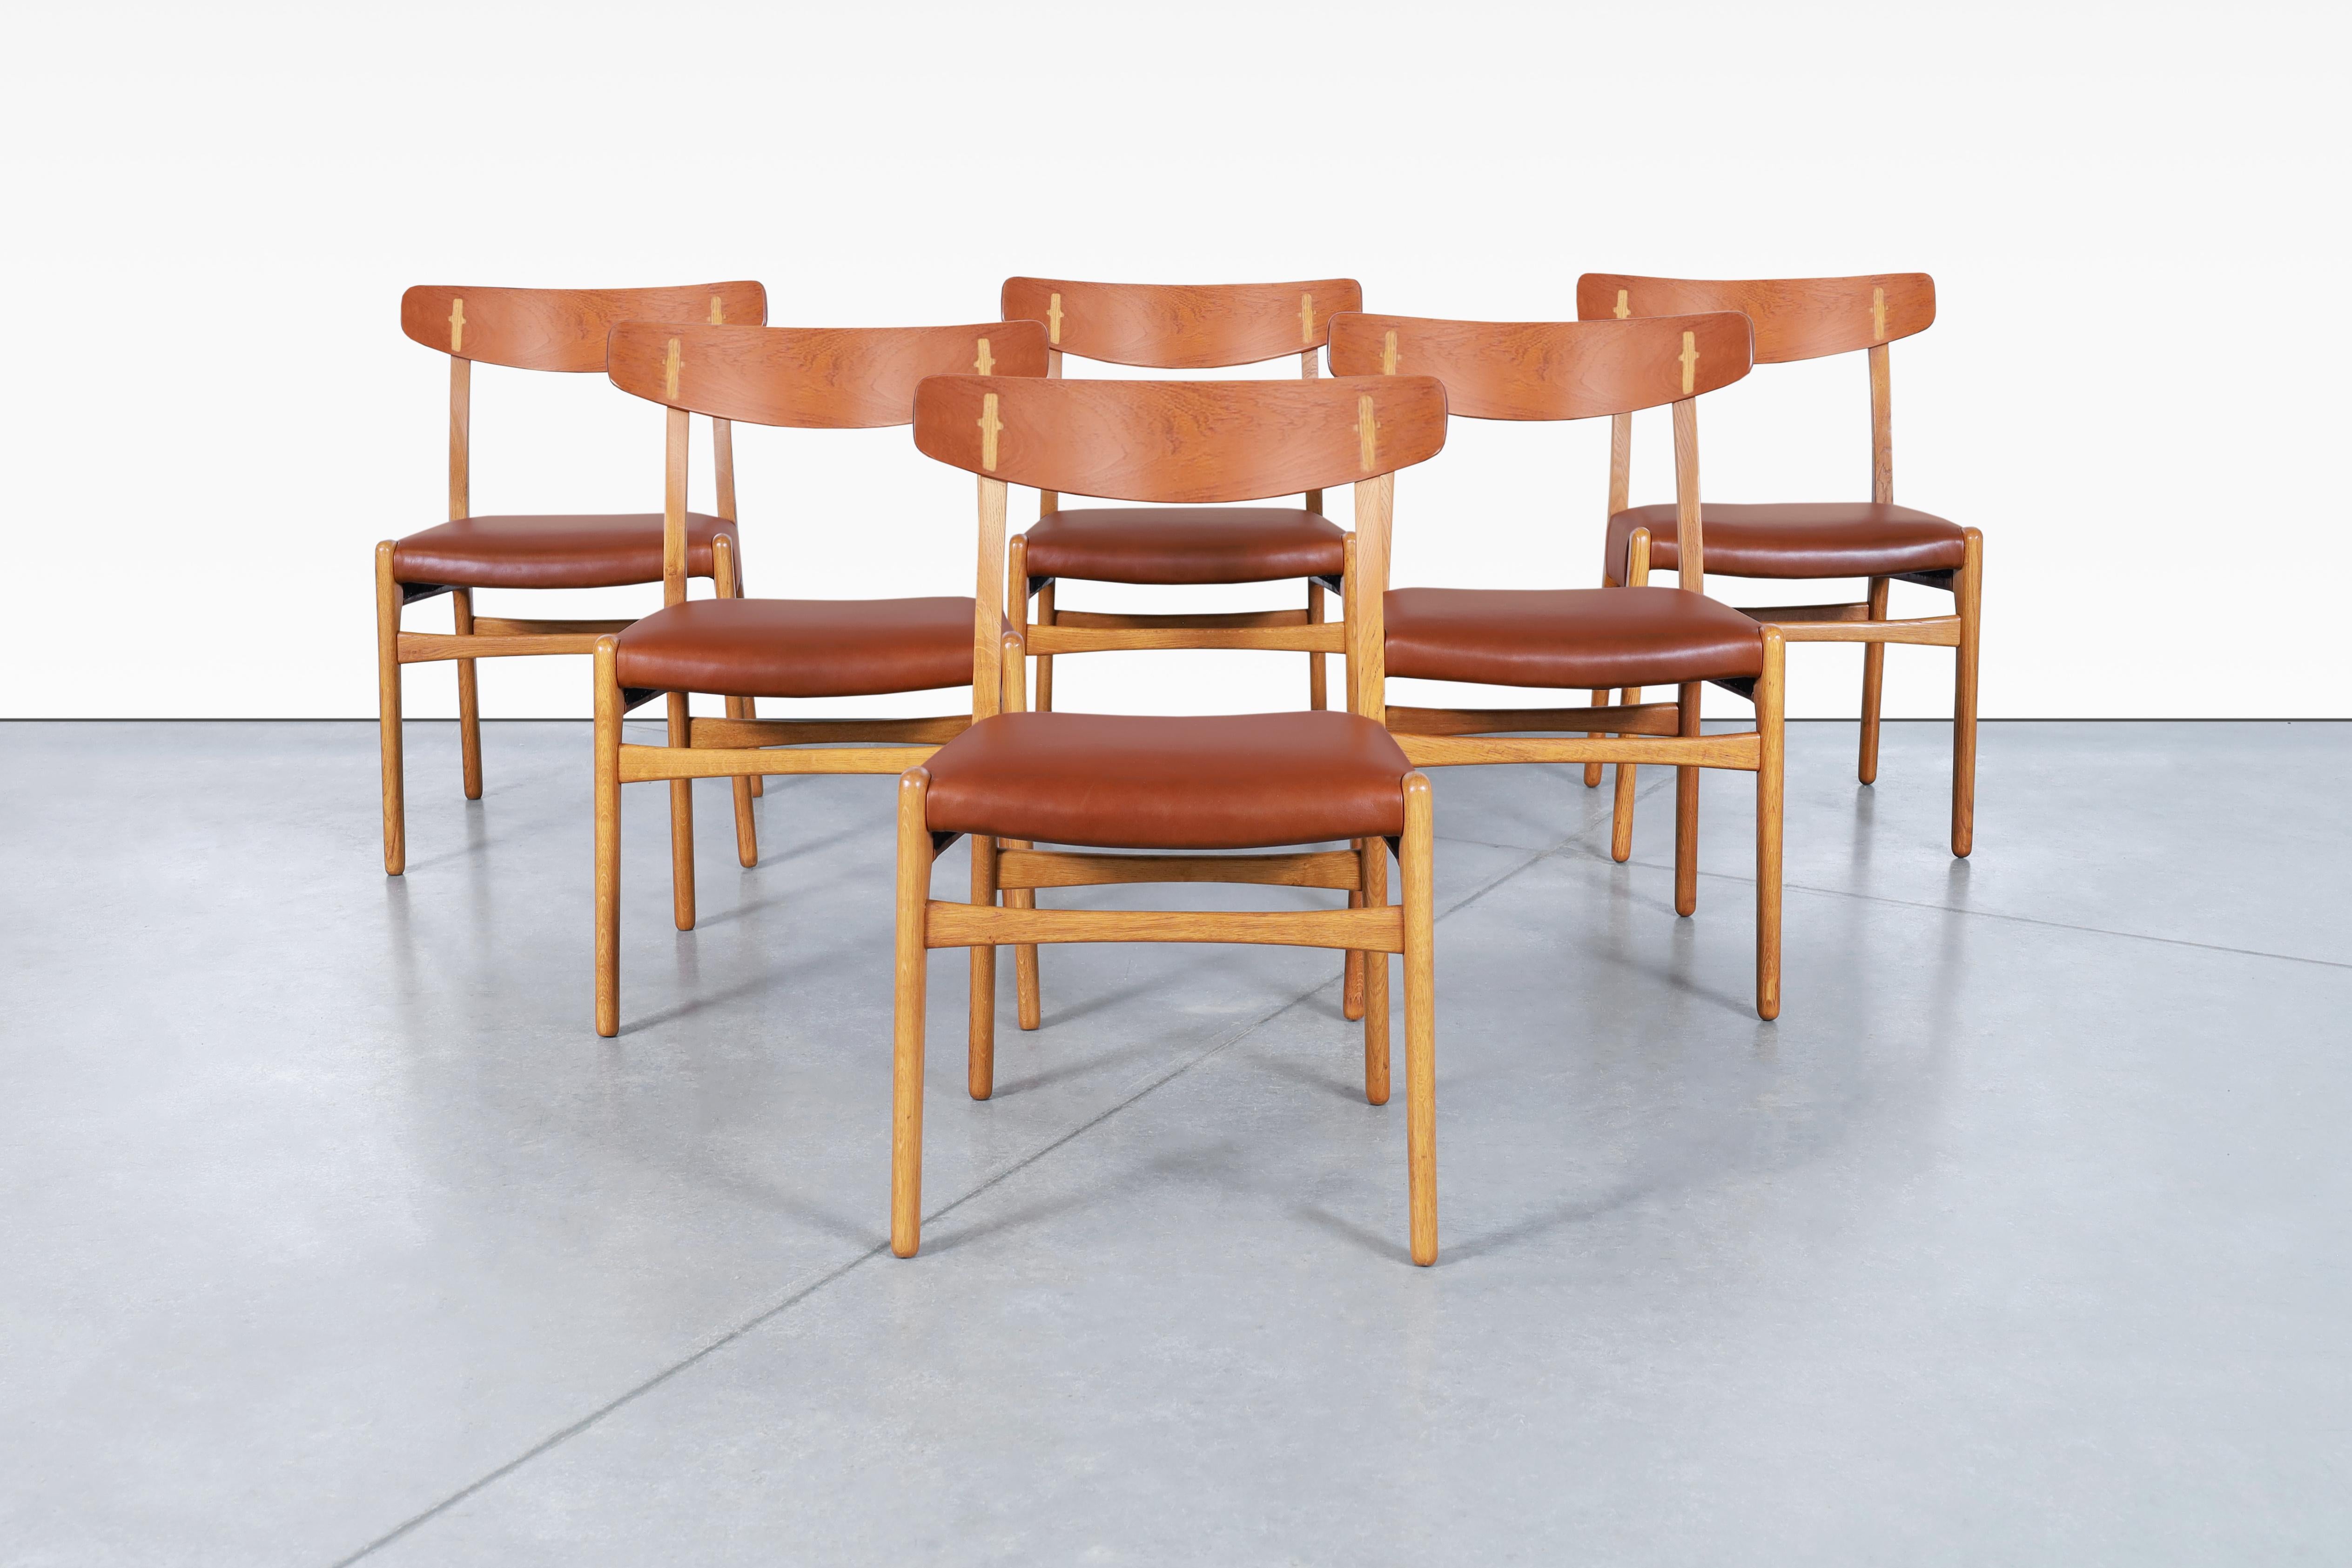 Magnifiques chaises de salle à manger danoises modernes en cuir, conçues par le célèbre designer Hans J. Wegner pour Carl Hansen & Søn au Danemark, vers les années 1950. Ces célèbres chaises, également connues sous le nom de CH-23, ont été